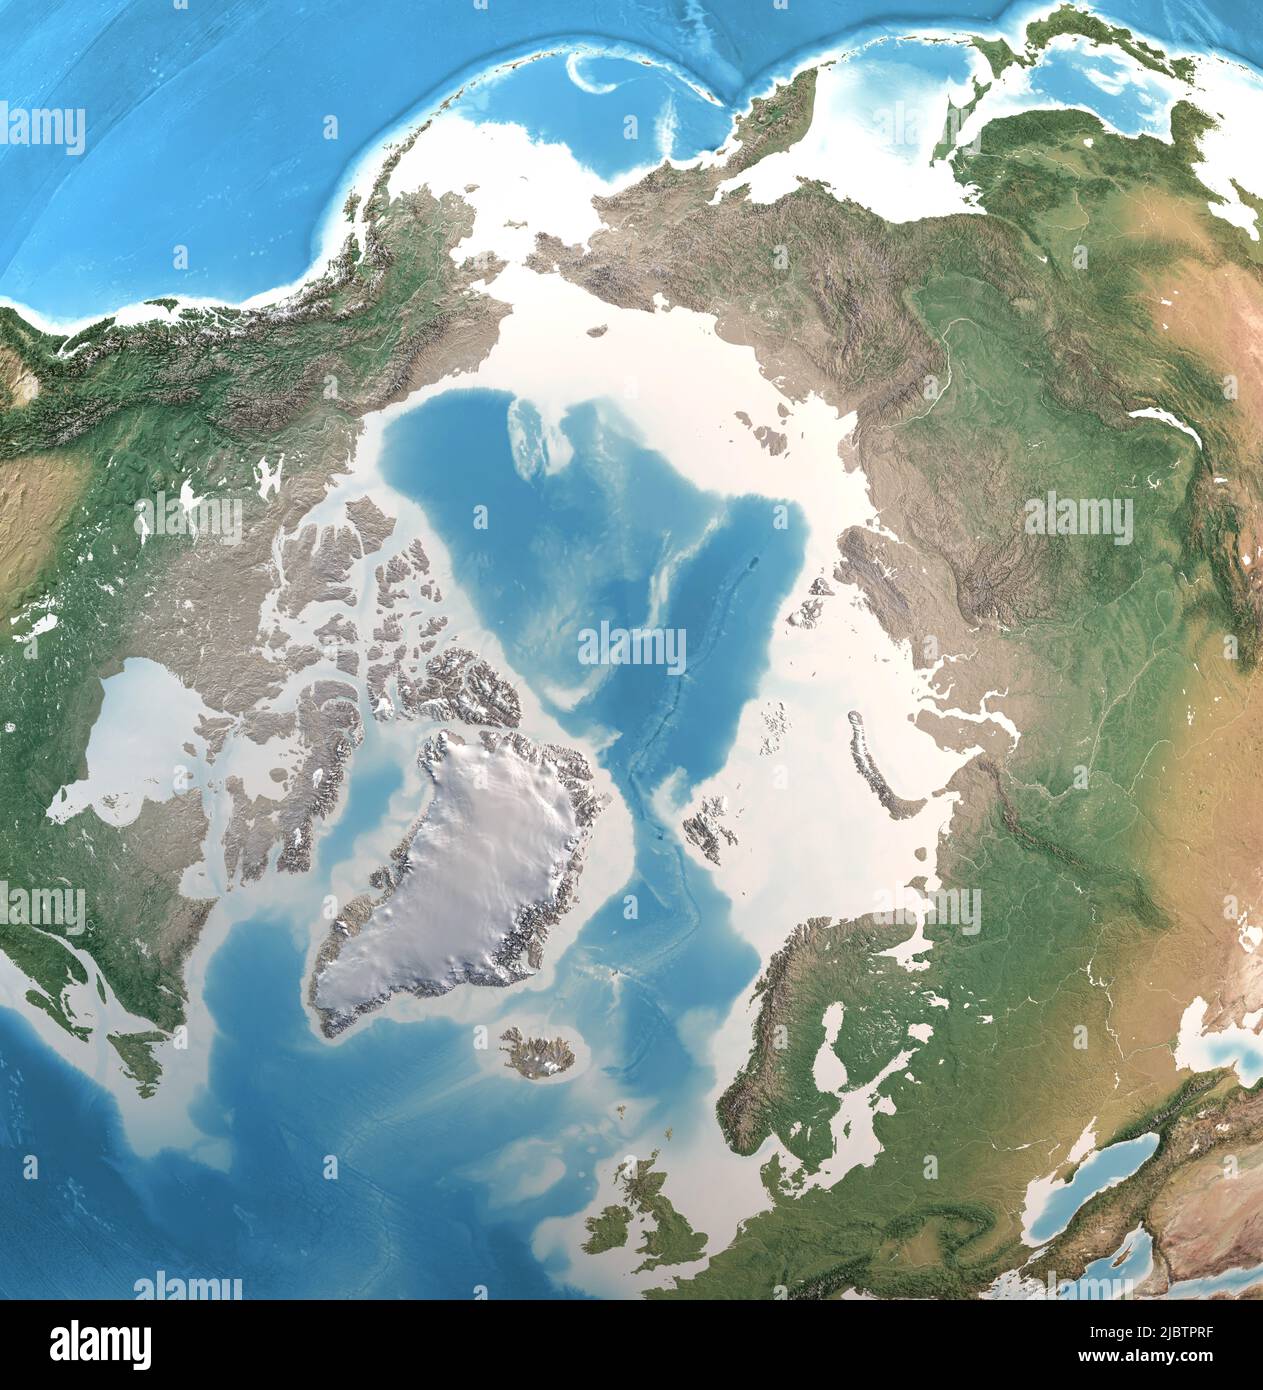 Carte physique du pôle Nord, de l'océan Arctique et du Groenland, avec détails haute résolution. Vue satellite de la planète Terre. Éléments fournis par la NASA Banque D'Images